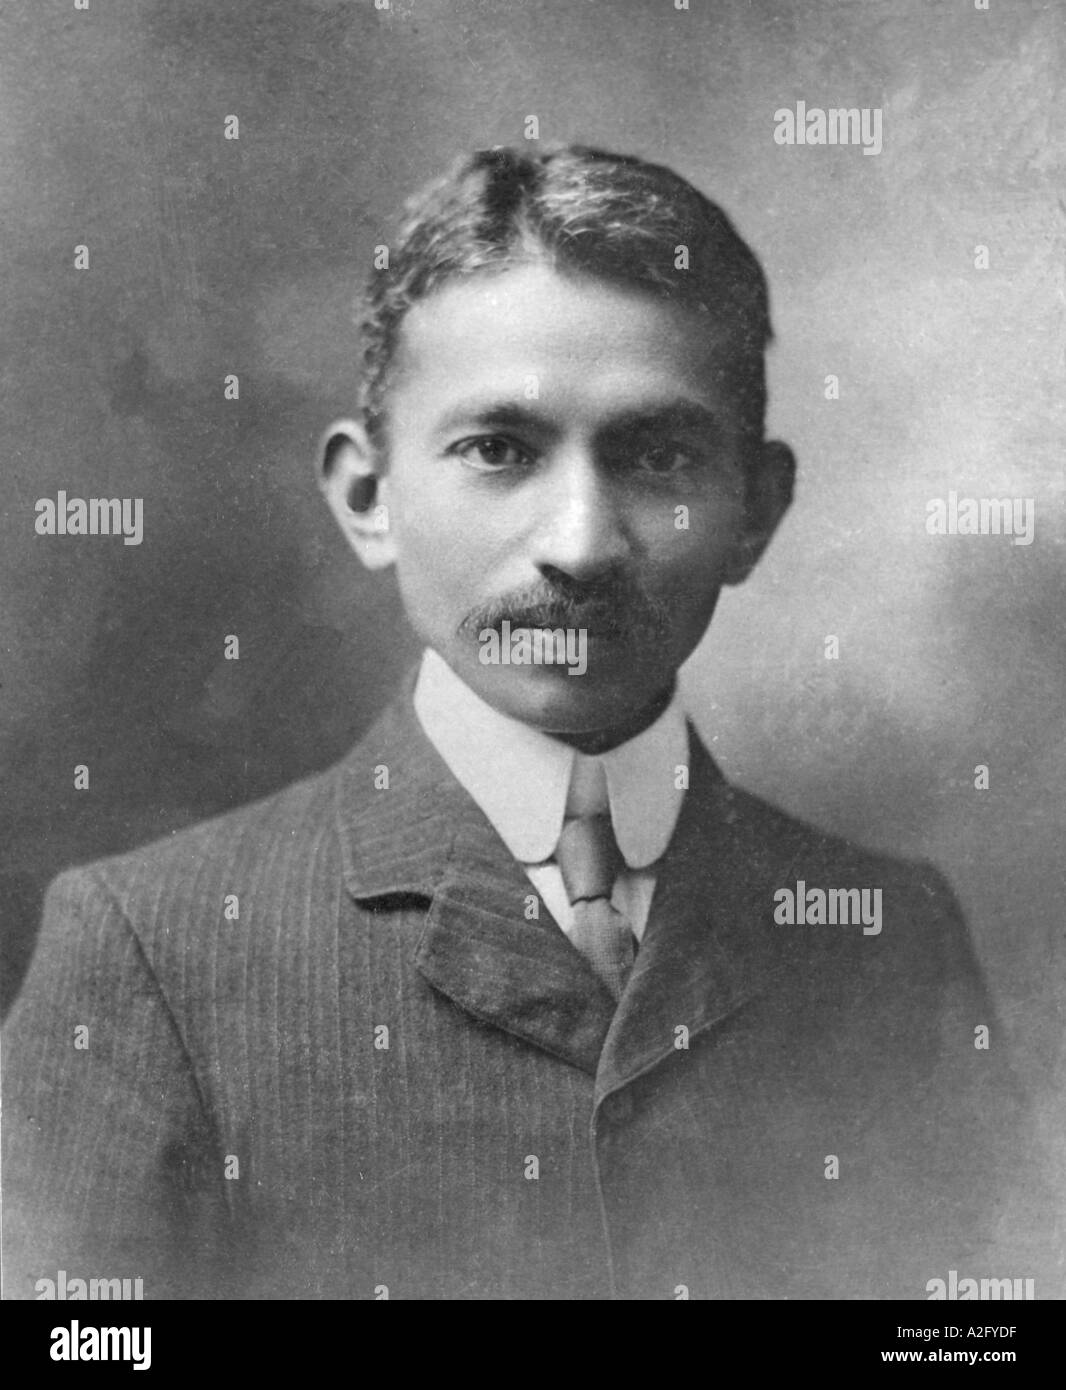 Jeune Mahatma Gandhi à Londres Angleterre Royaume-Uni Royaume-Uni 1909 en manteau veste costume chemise et cravate, vieux vintage 1900s image Banque D'Images